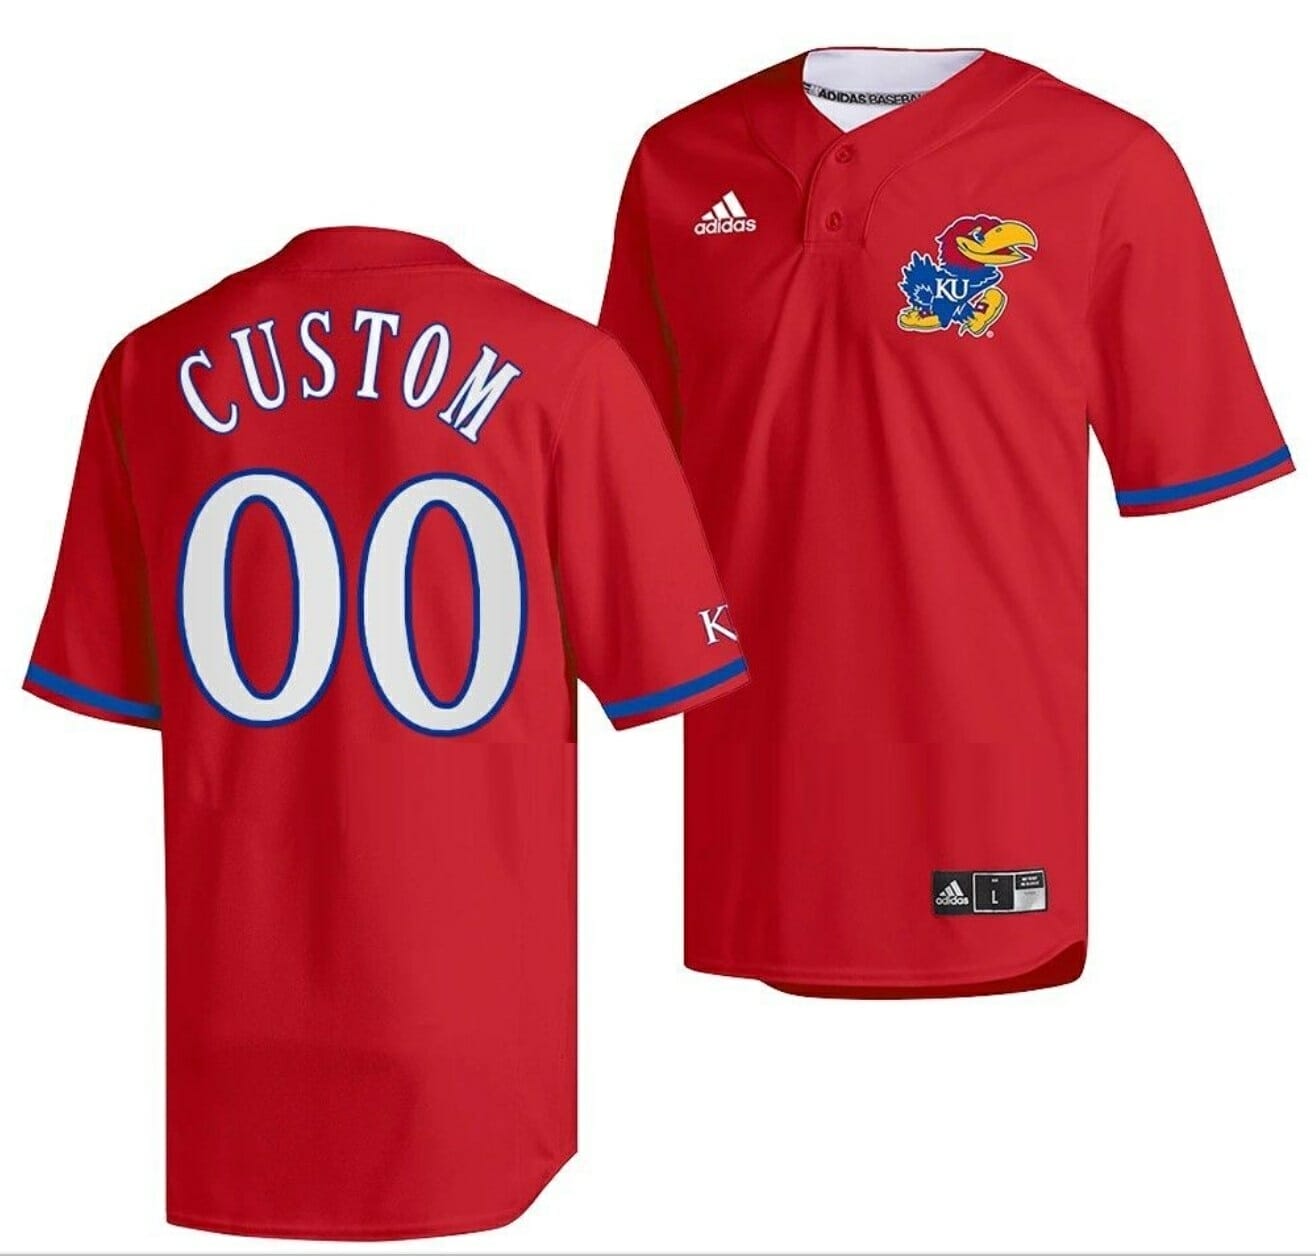 Trending] New Custom Kansas Jayhawks Baseball Jersey Red